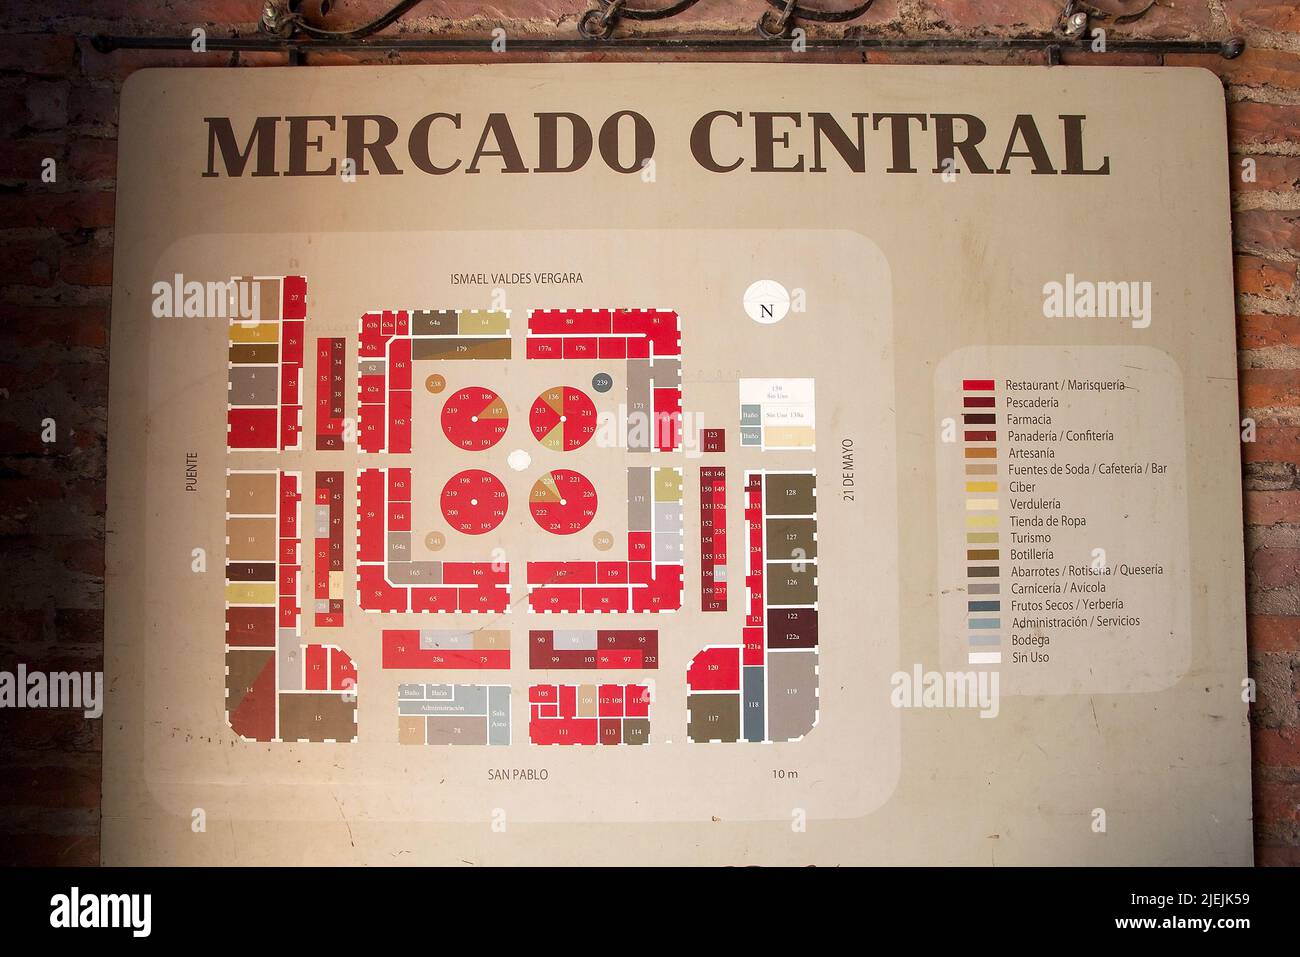 Mercado Central map at the Santiago de Chile, Chile. The Mercado Central was opened in 1872 and it is the central market of santiago de Chile Stock Photo